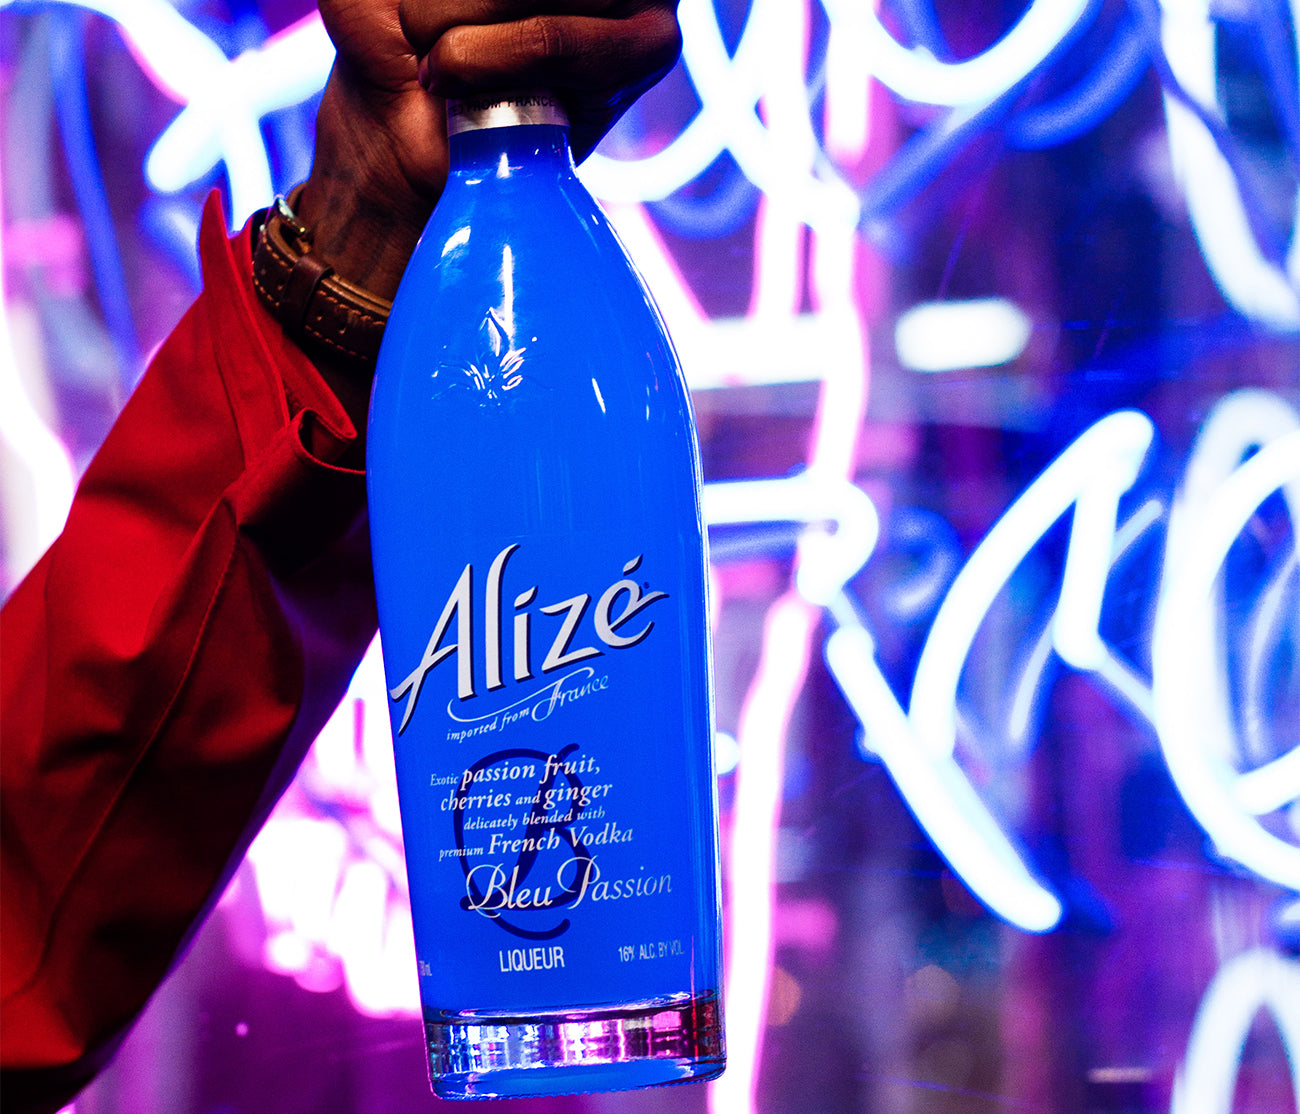 Alizé Bleu Passion Liqueur